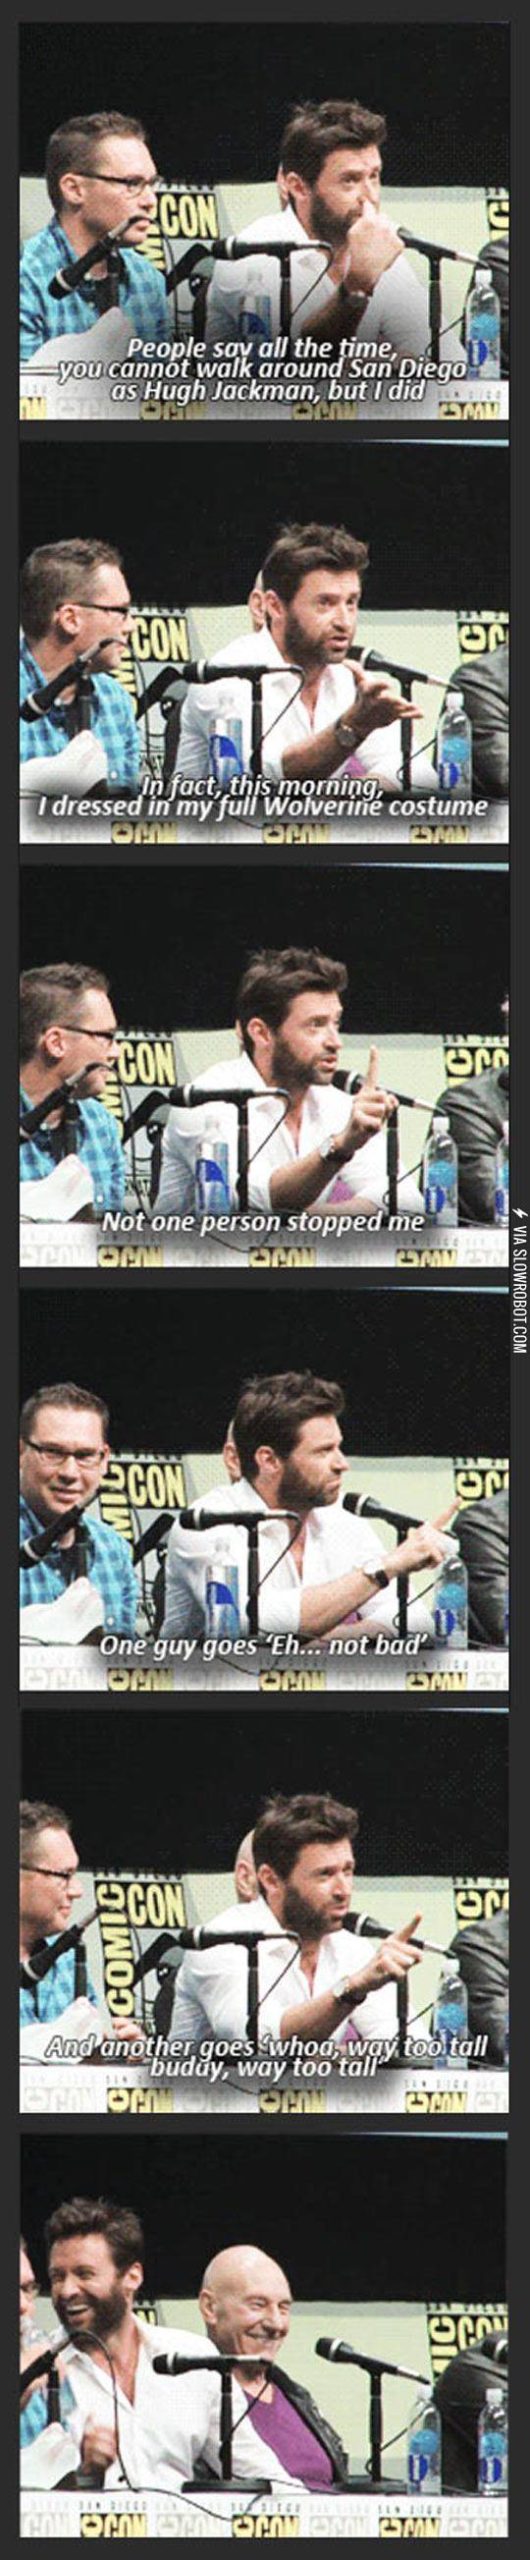 Hugh+Jackman+As+Wolverine+At+Comic-Con